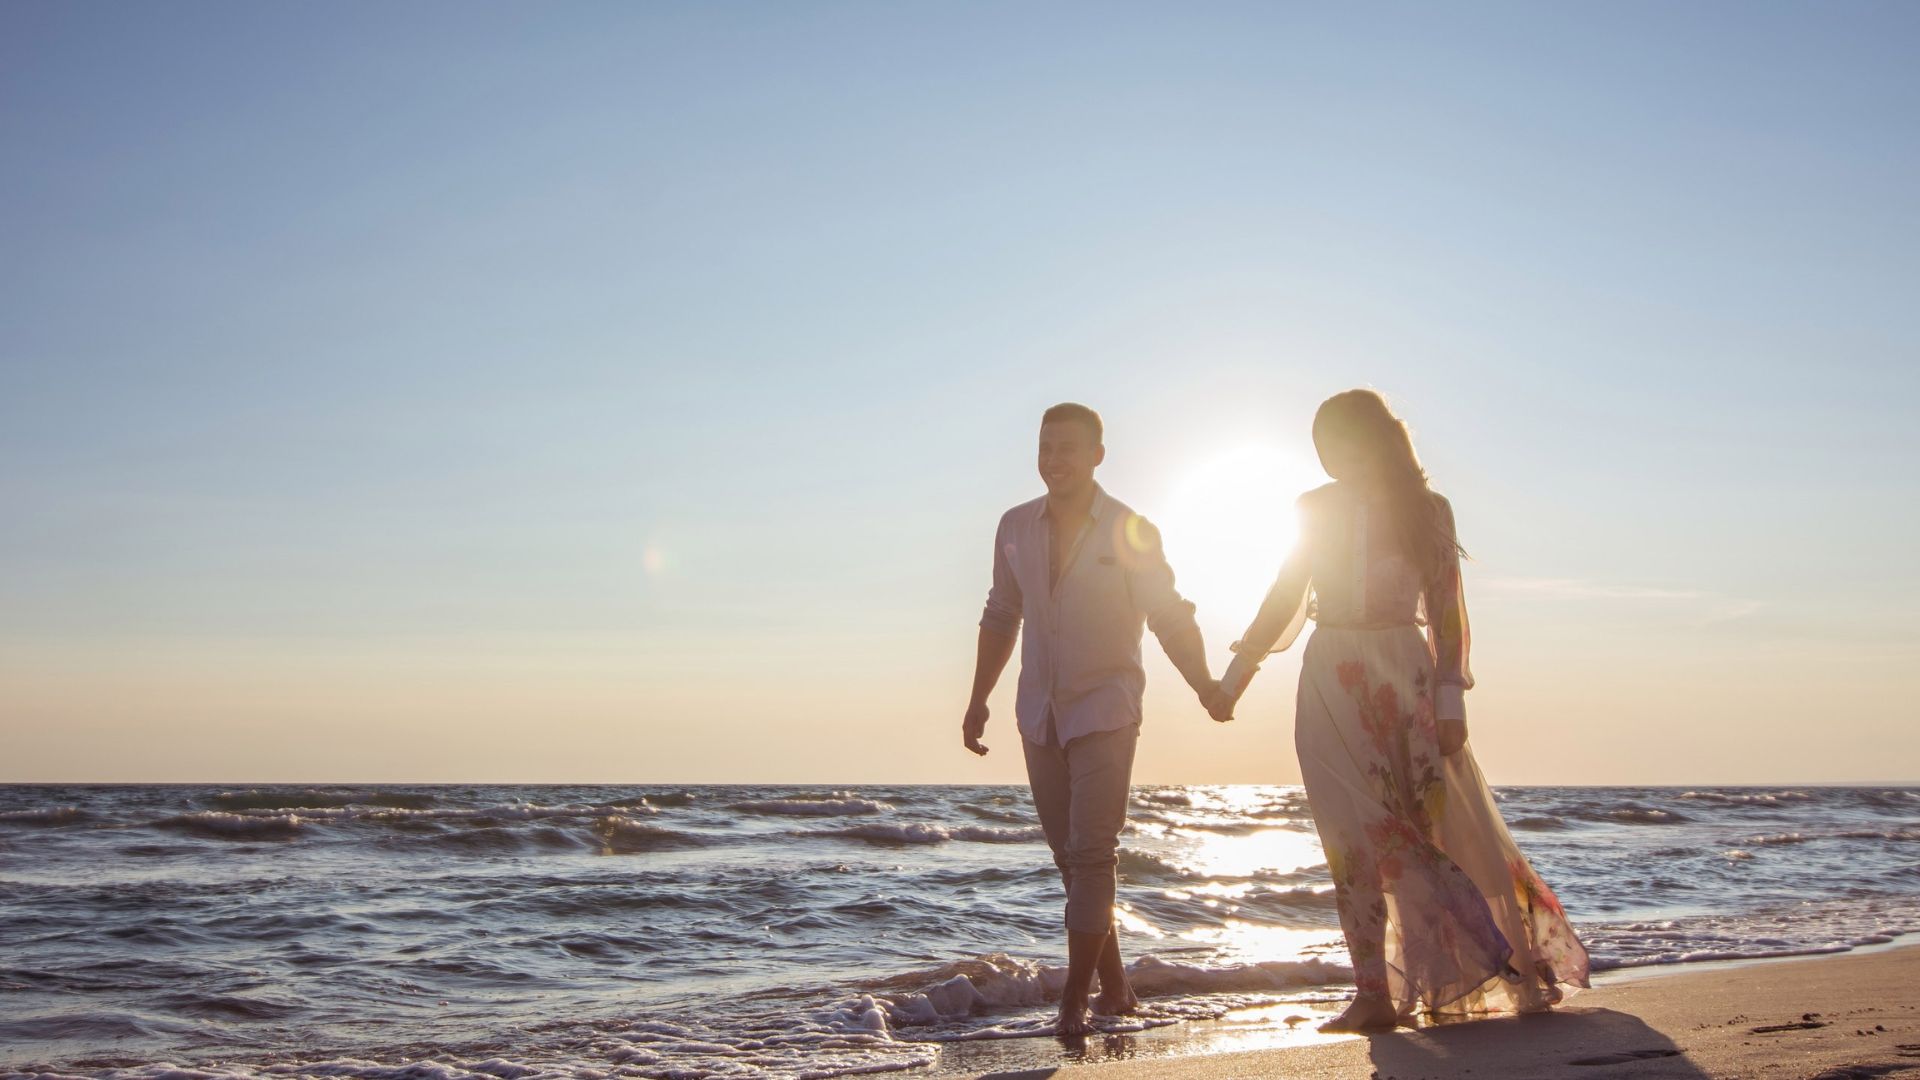 Imagem do mar e ao lado, temos um casal de mãos dadas caminhando na areia.